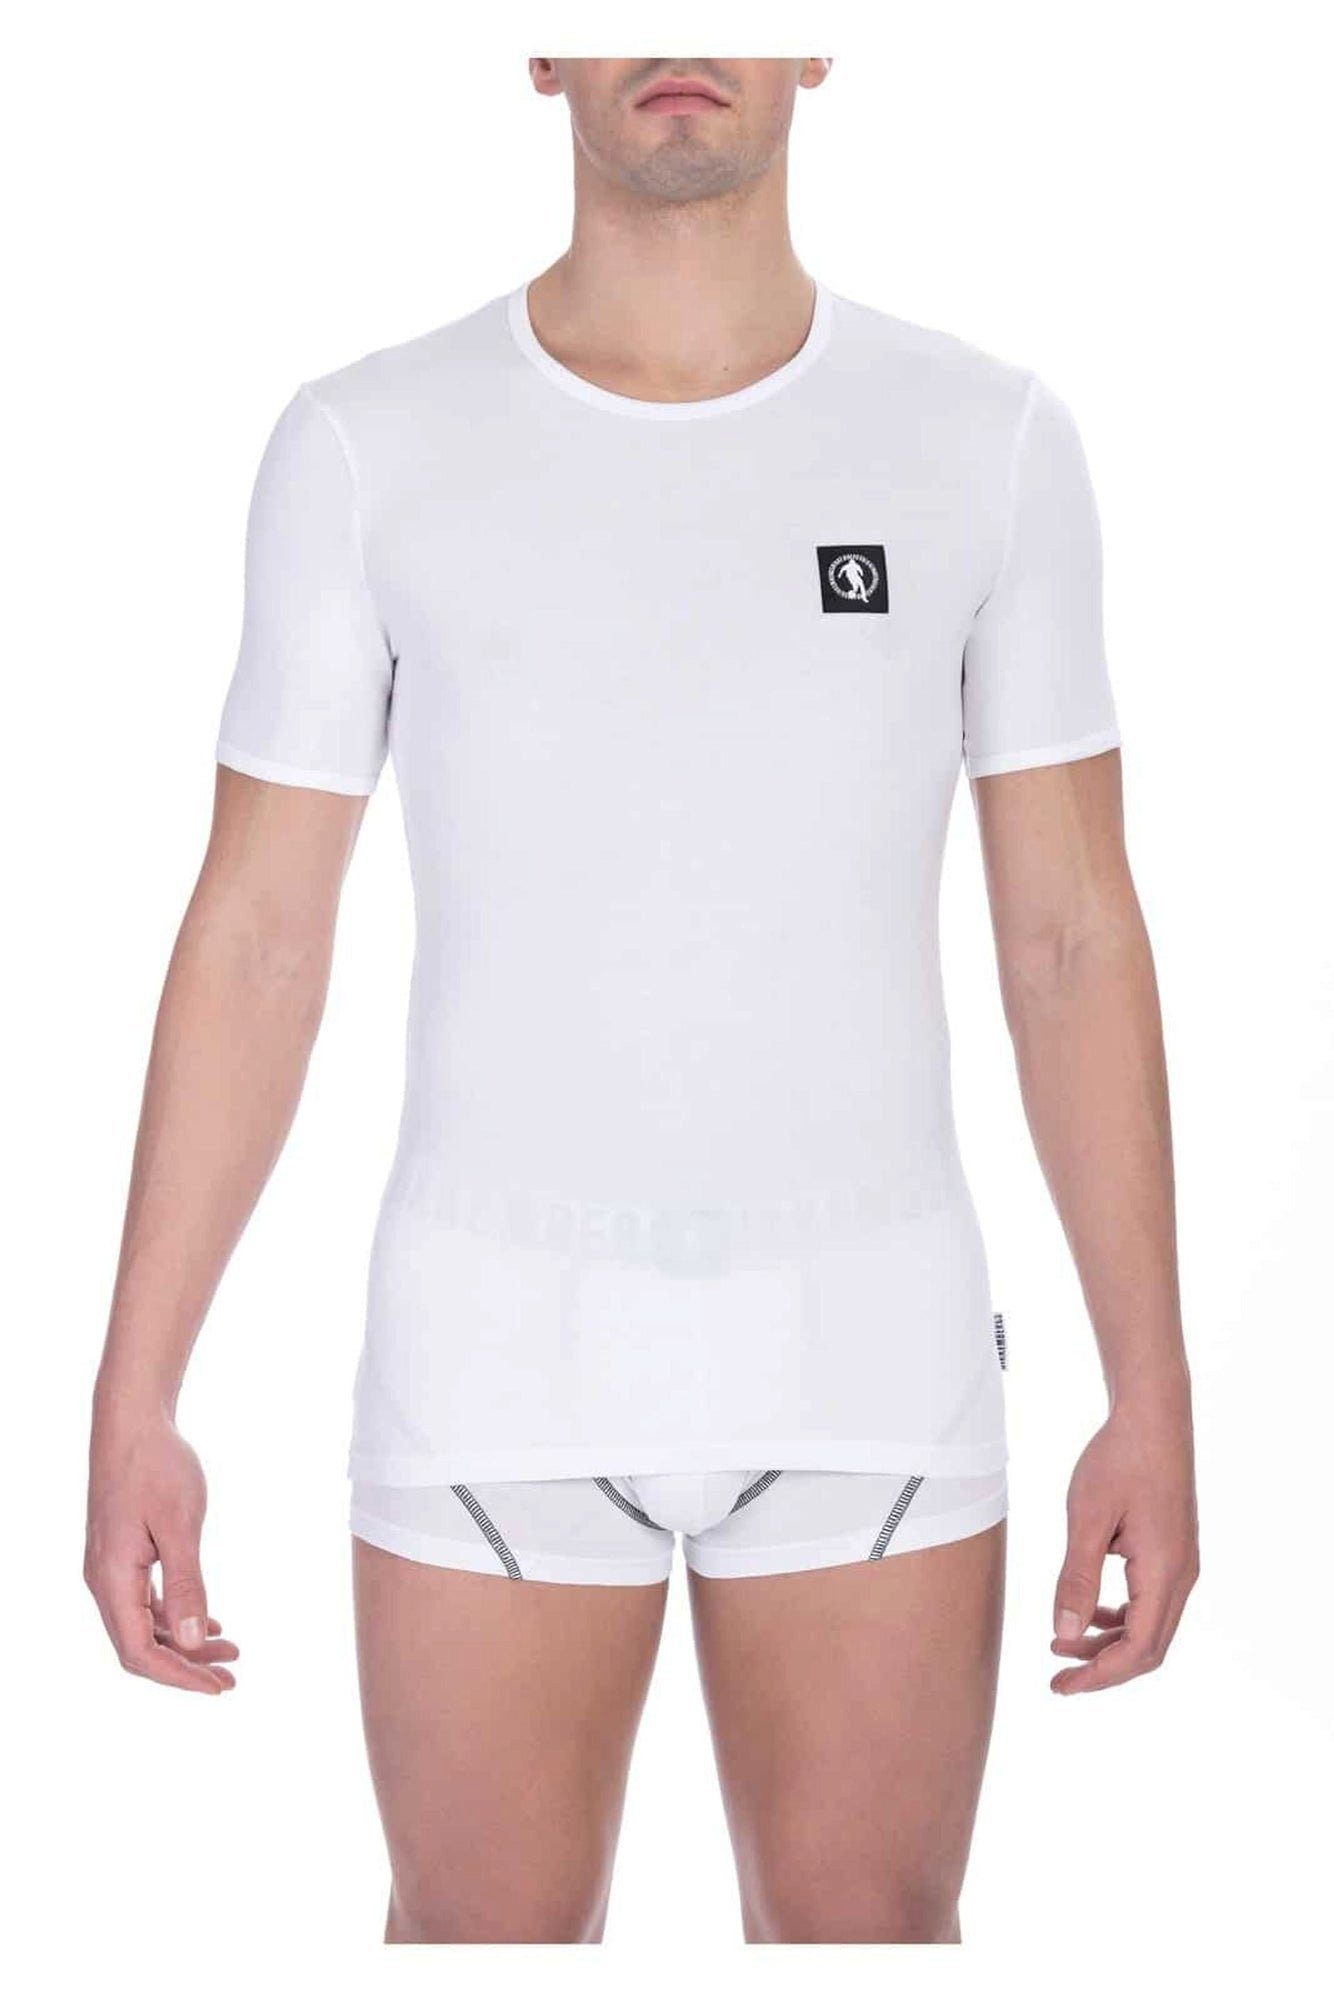 Bikkembergs T-Shirt, 2er-Pack, Weiß, R-Ausschnitt (2er-Pack, 2ei T-Shirts)